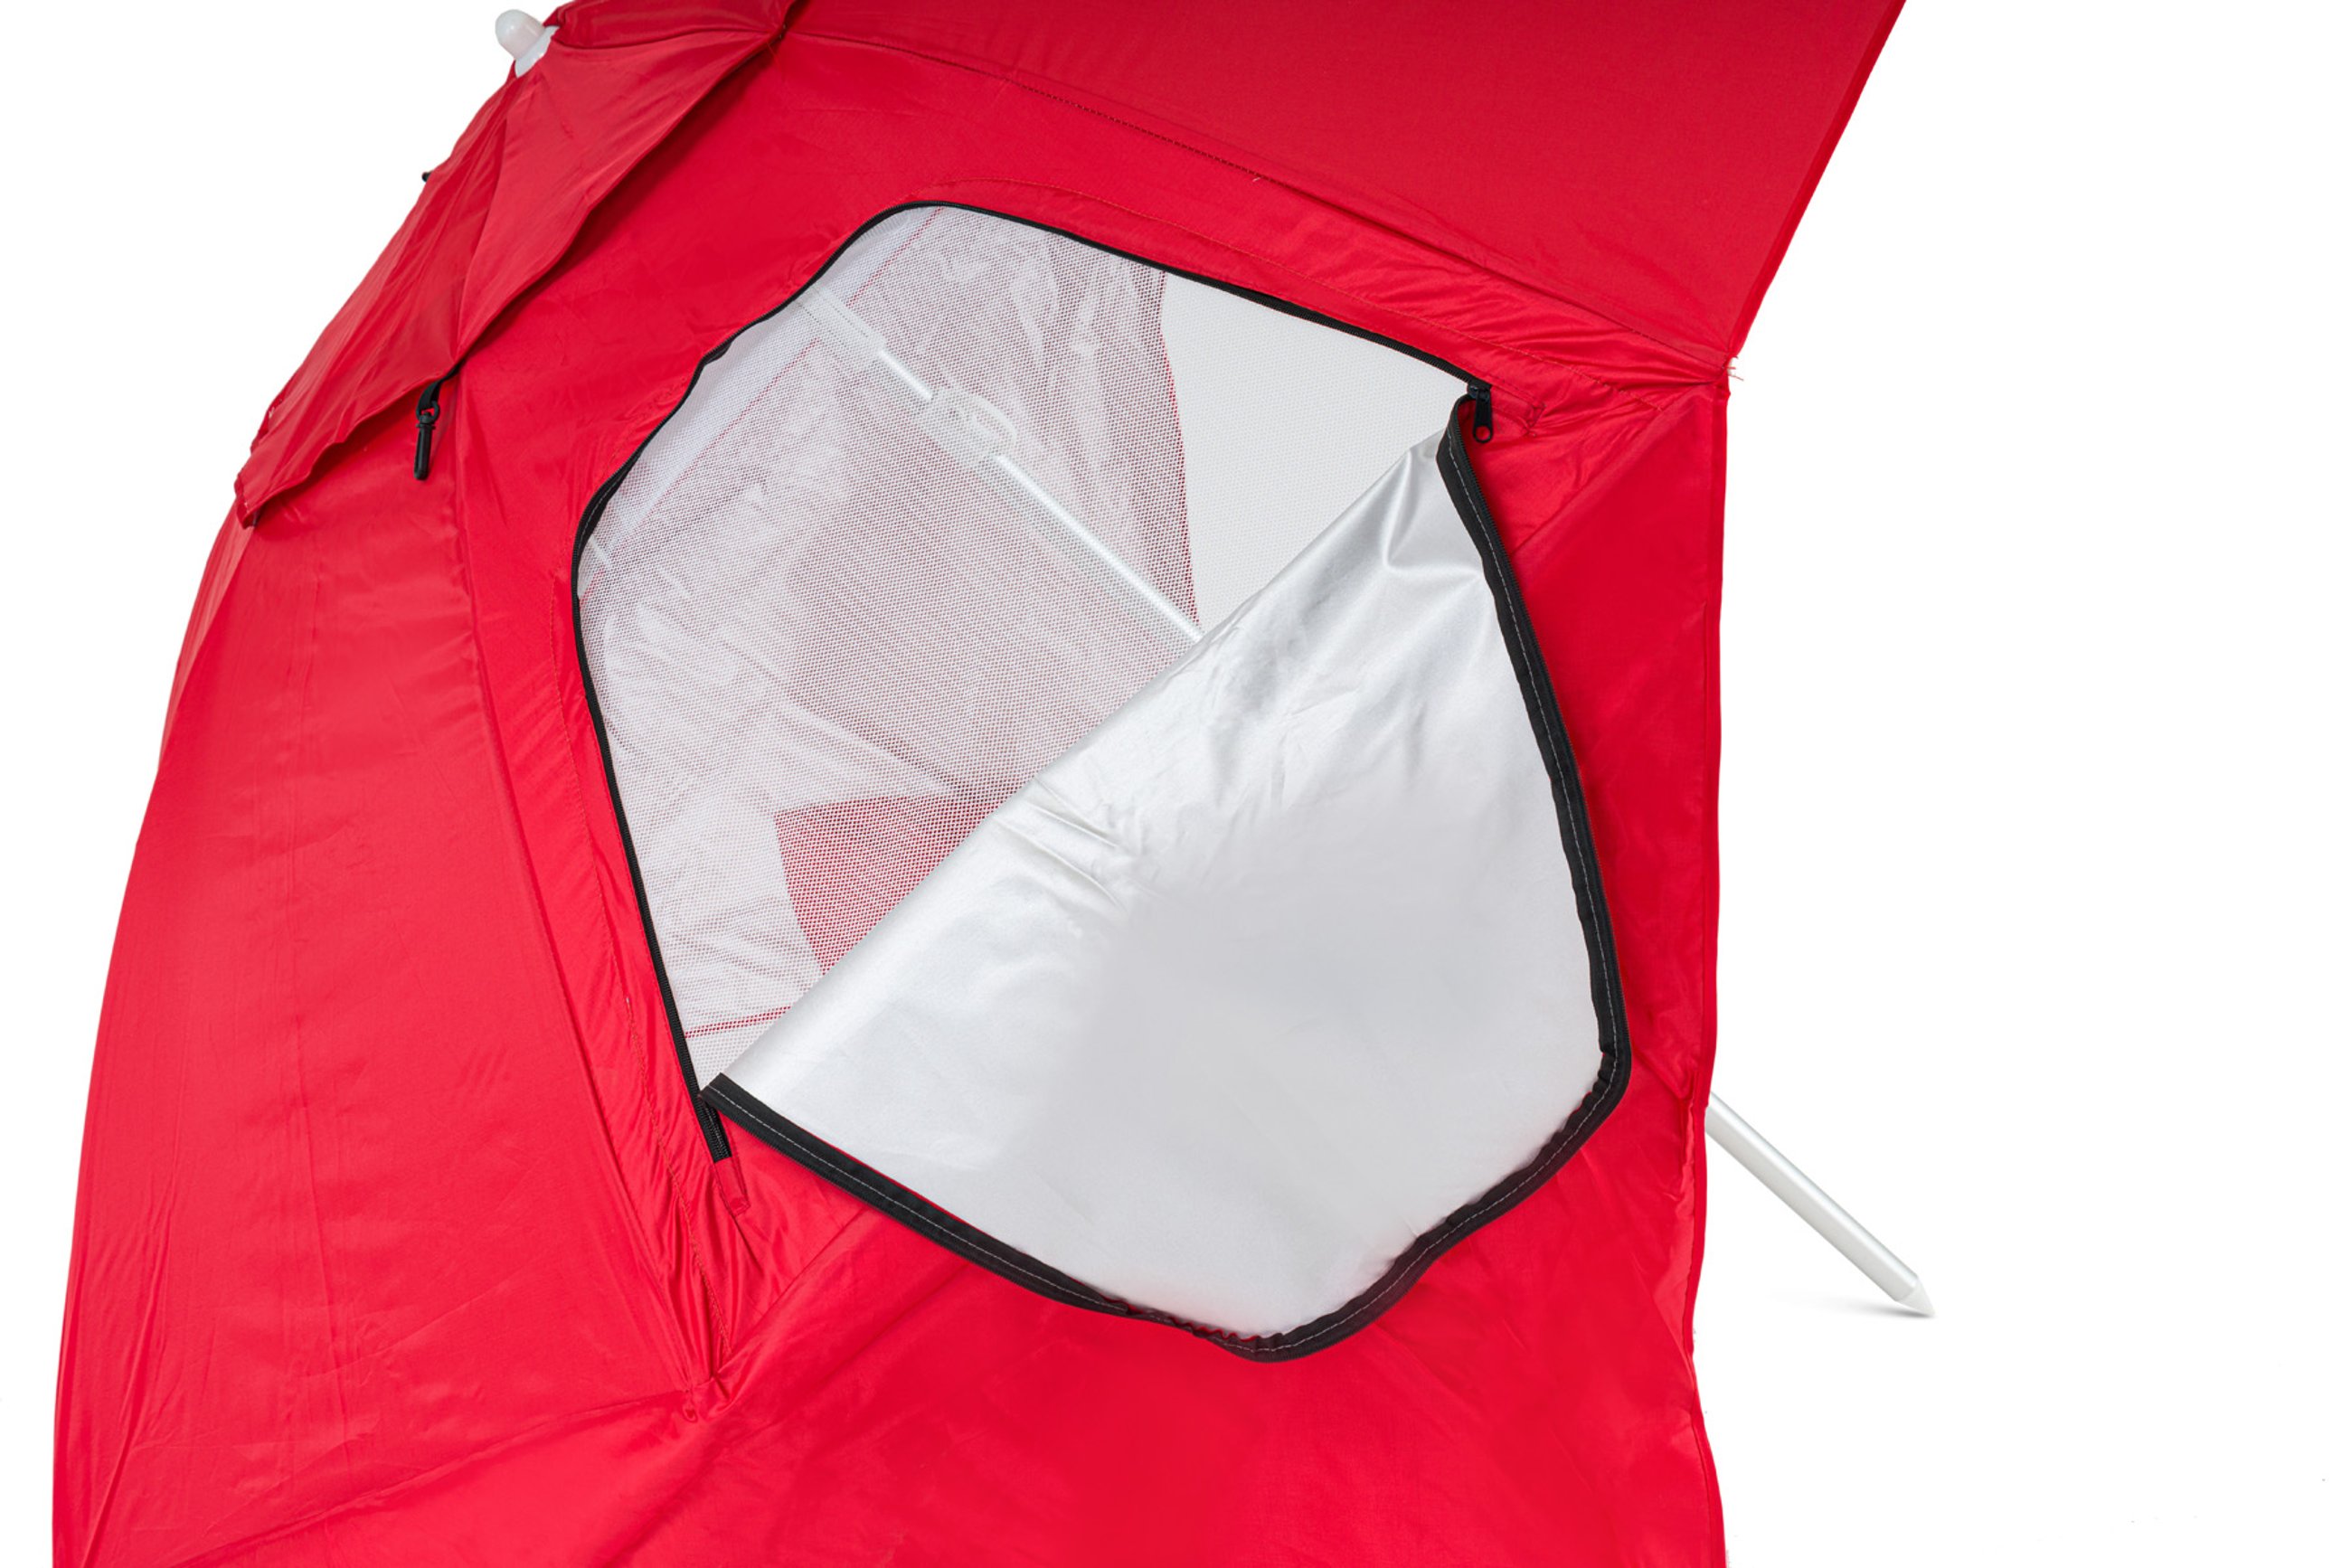 otwory wentylacyjne w parasolu plażowym Sora czerwony marki di volio